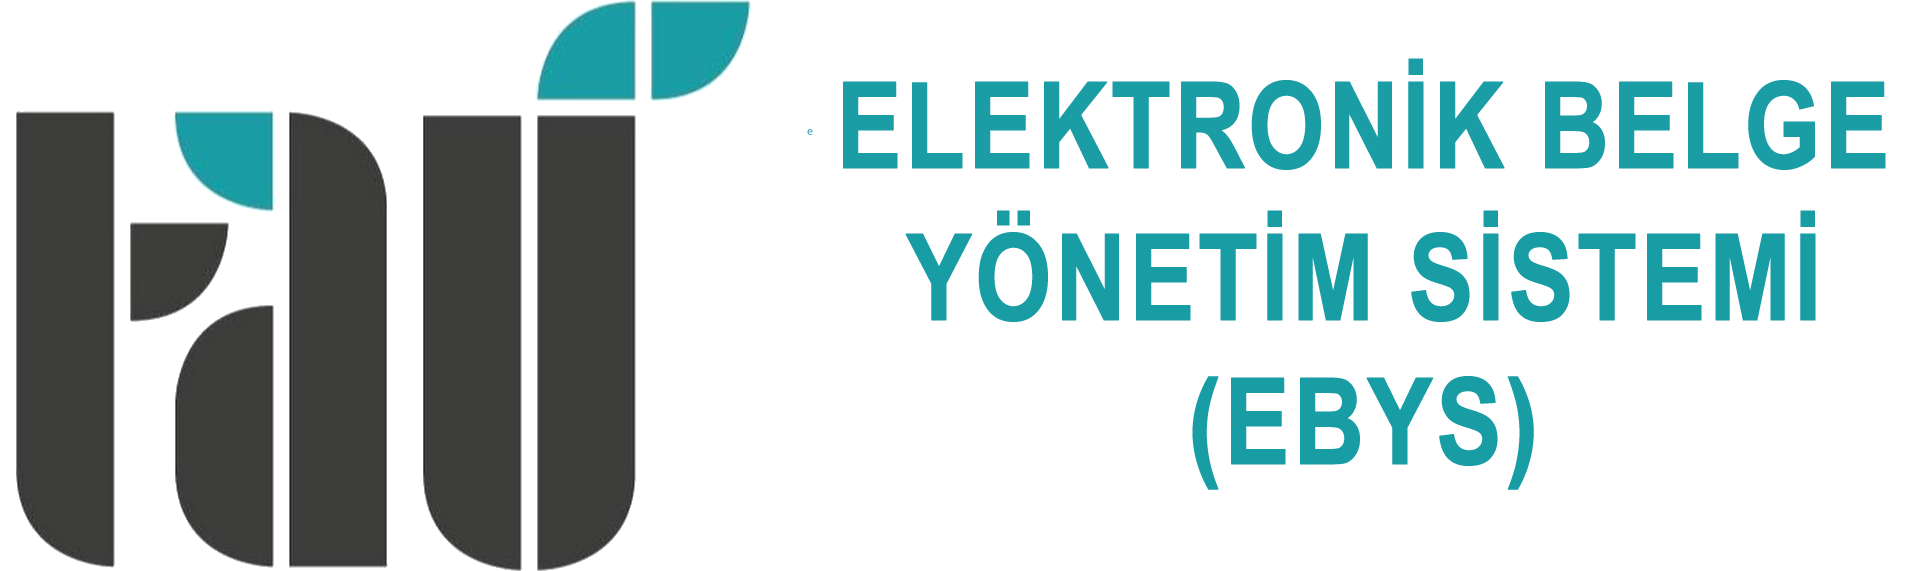 turk alman universitesi elektronik belge yonetim sistemi turk alman universitesi elektronik belge yonetim sistemi